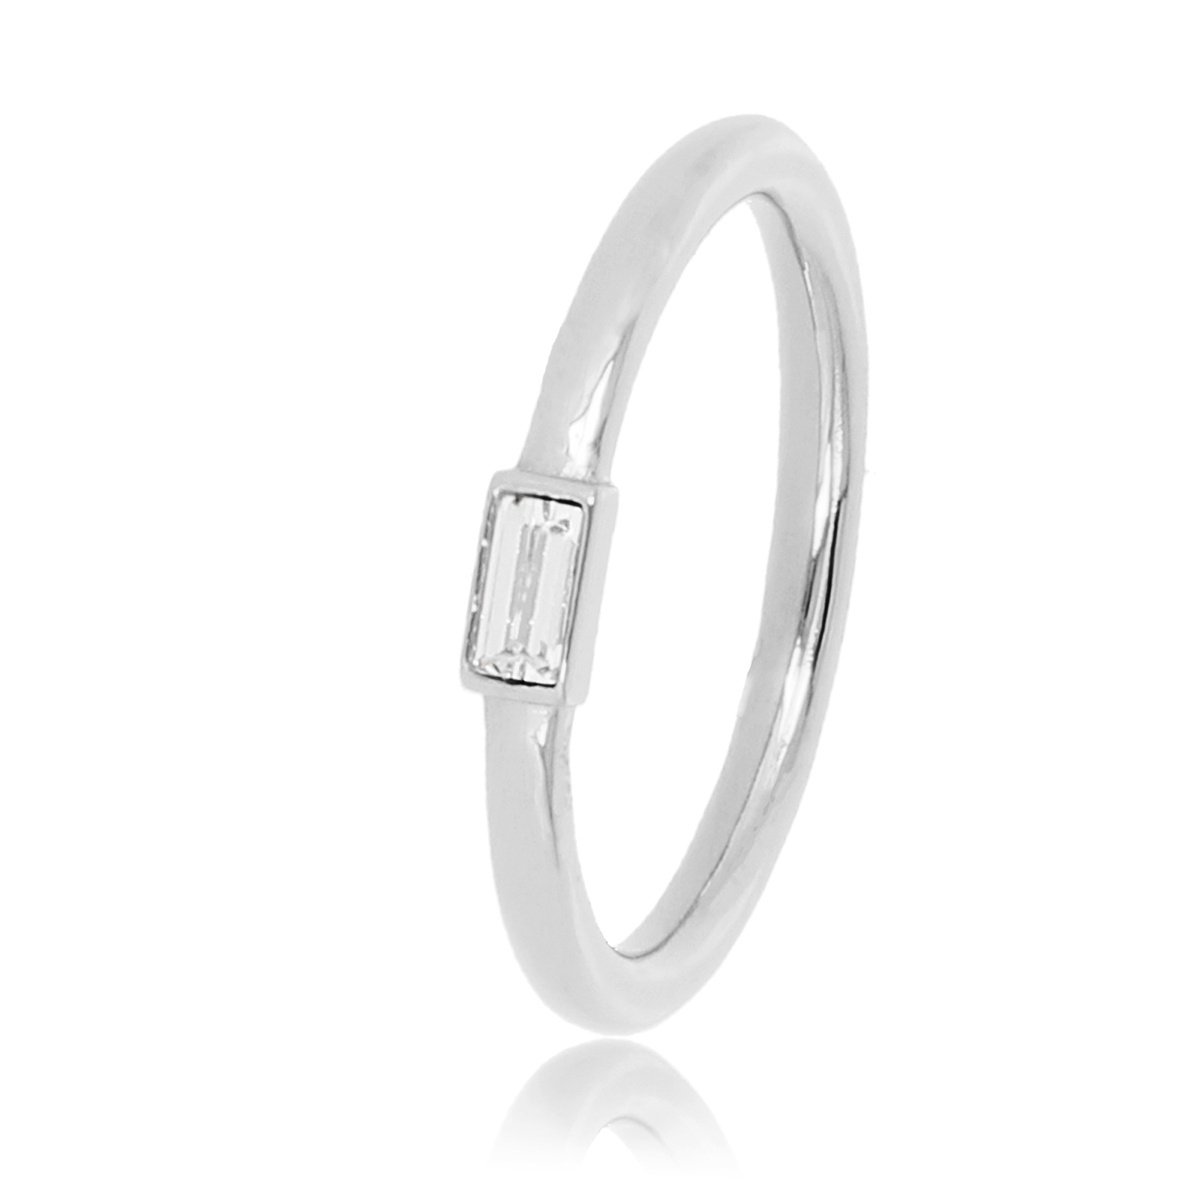 My Bendel - Ring zilver met een kleine kristal glassteen - Ring zilver met een kleine kristal glassteen - Met luxe cadeauverpakking